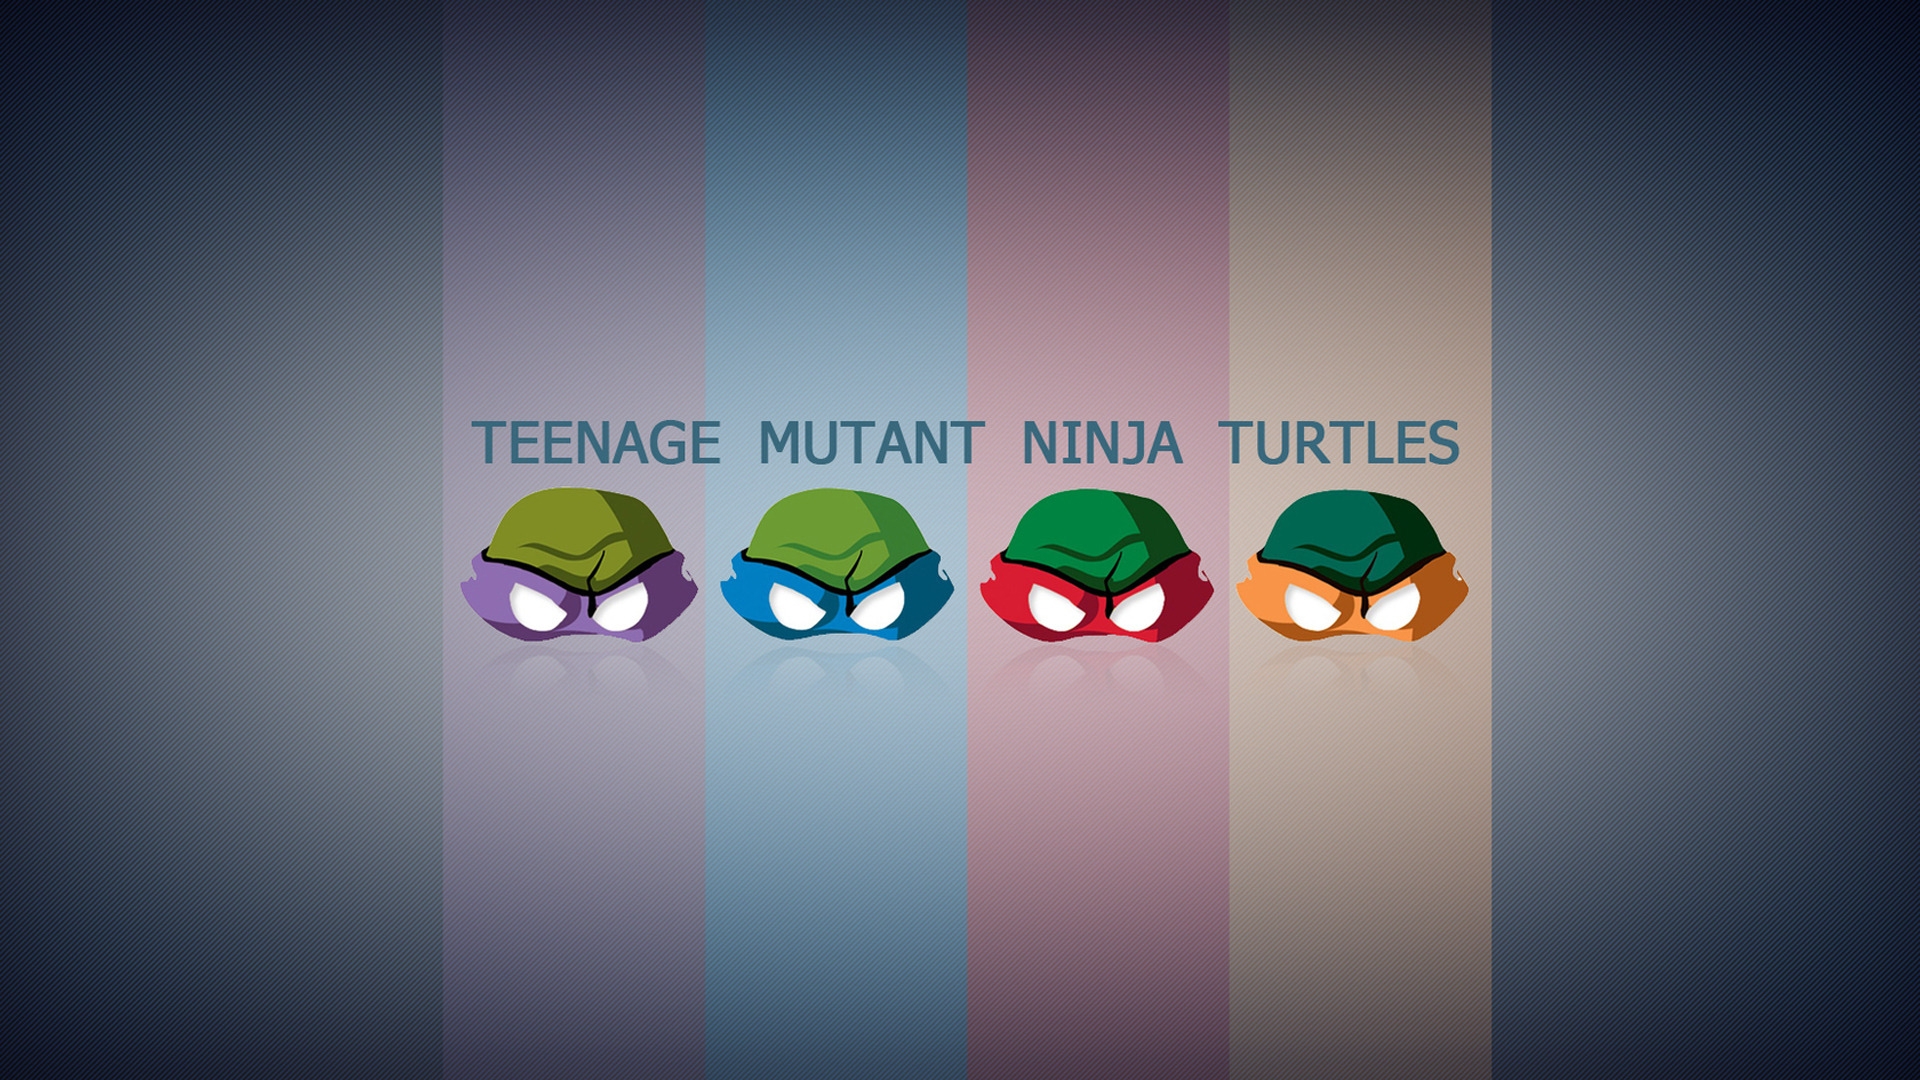 Teengae Mutant Ninja Turtles for 1920 x 1080 HDTV 1080p resolution